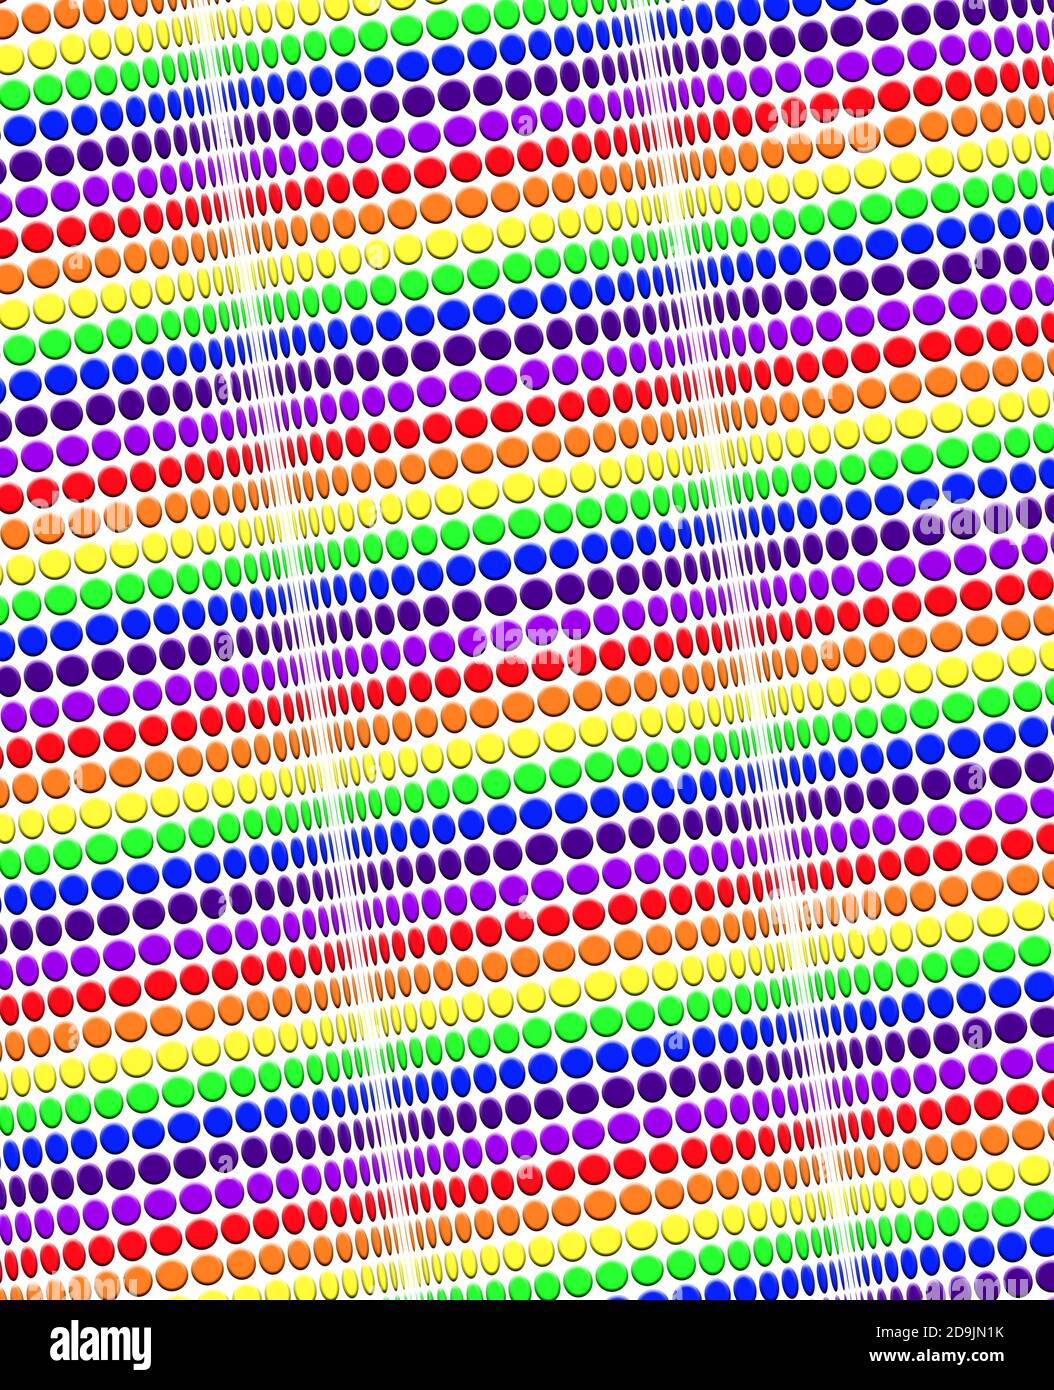 Illusion 3D de forme de cycinders avec des points dans les couleurs de l'arc-en-ciel Banque D'Images